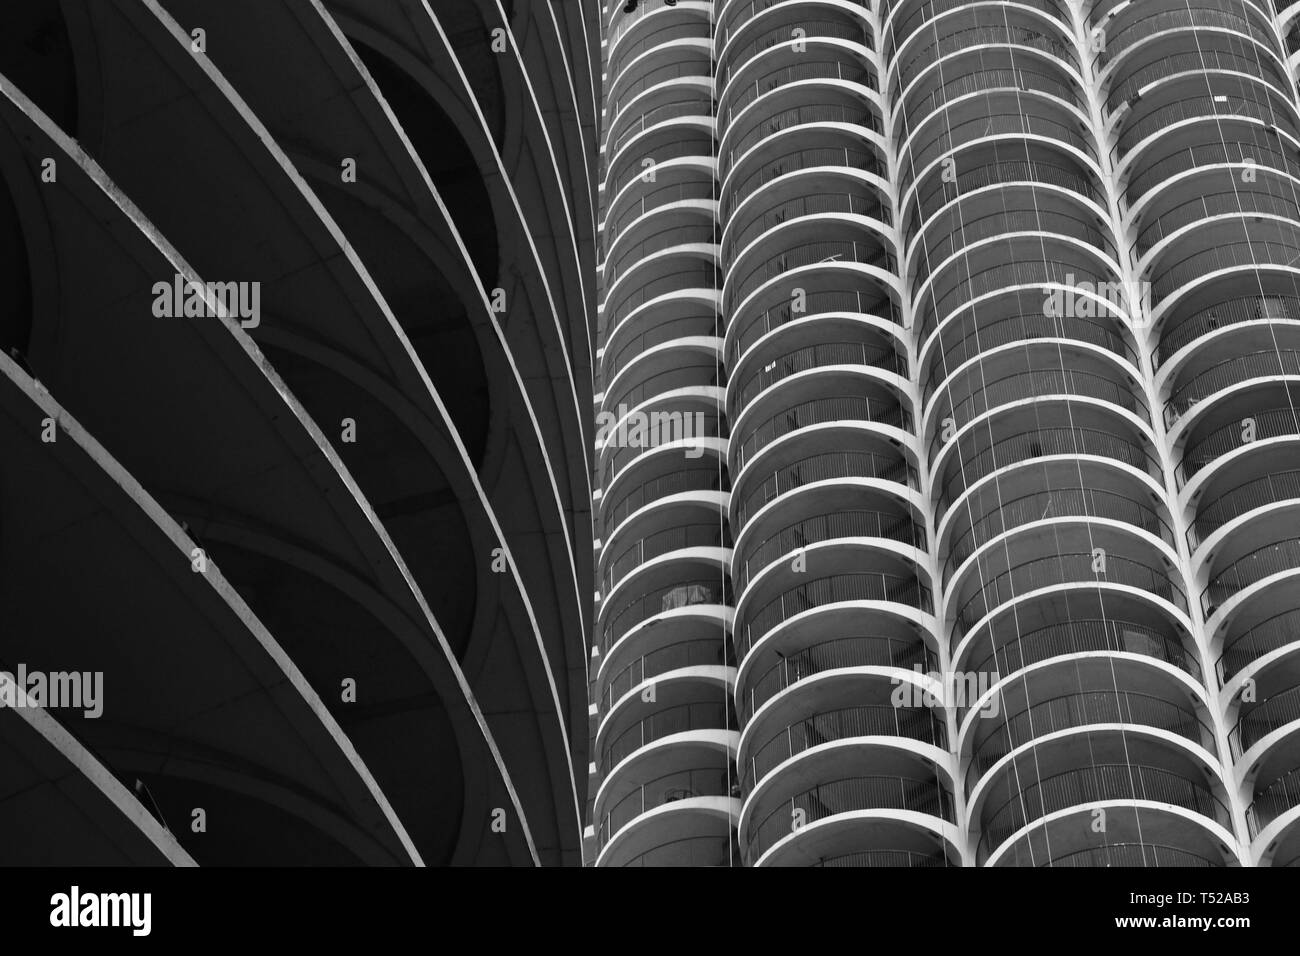 Marina torri della città, celebre architettura di Chicago landmark lungo il fiume Chicago nel nord del fiume Chicago, Illinois in bianco e nero Foto Stock